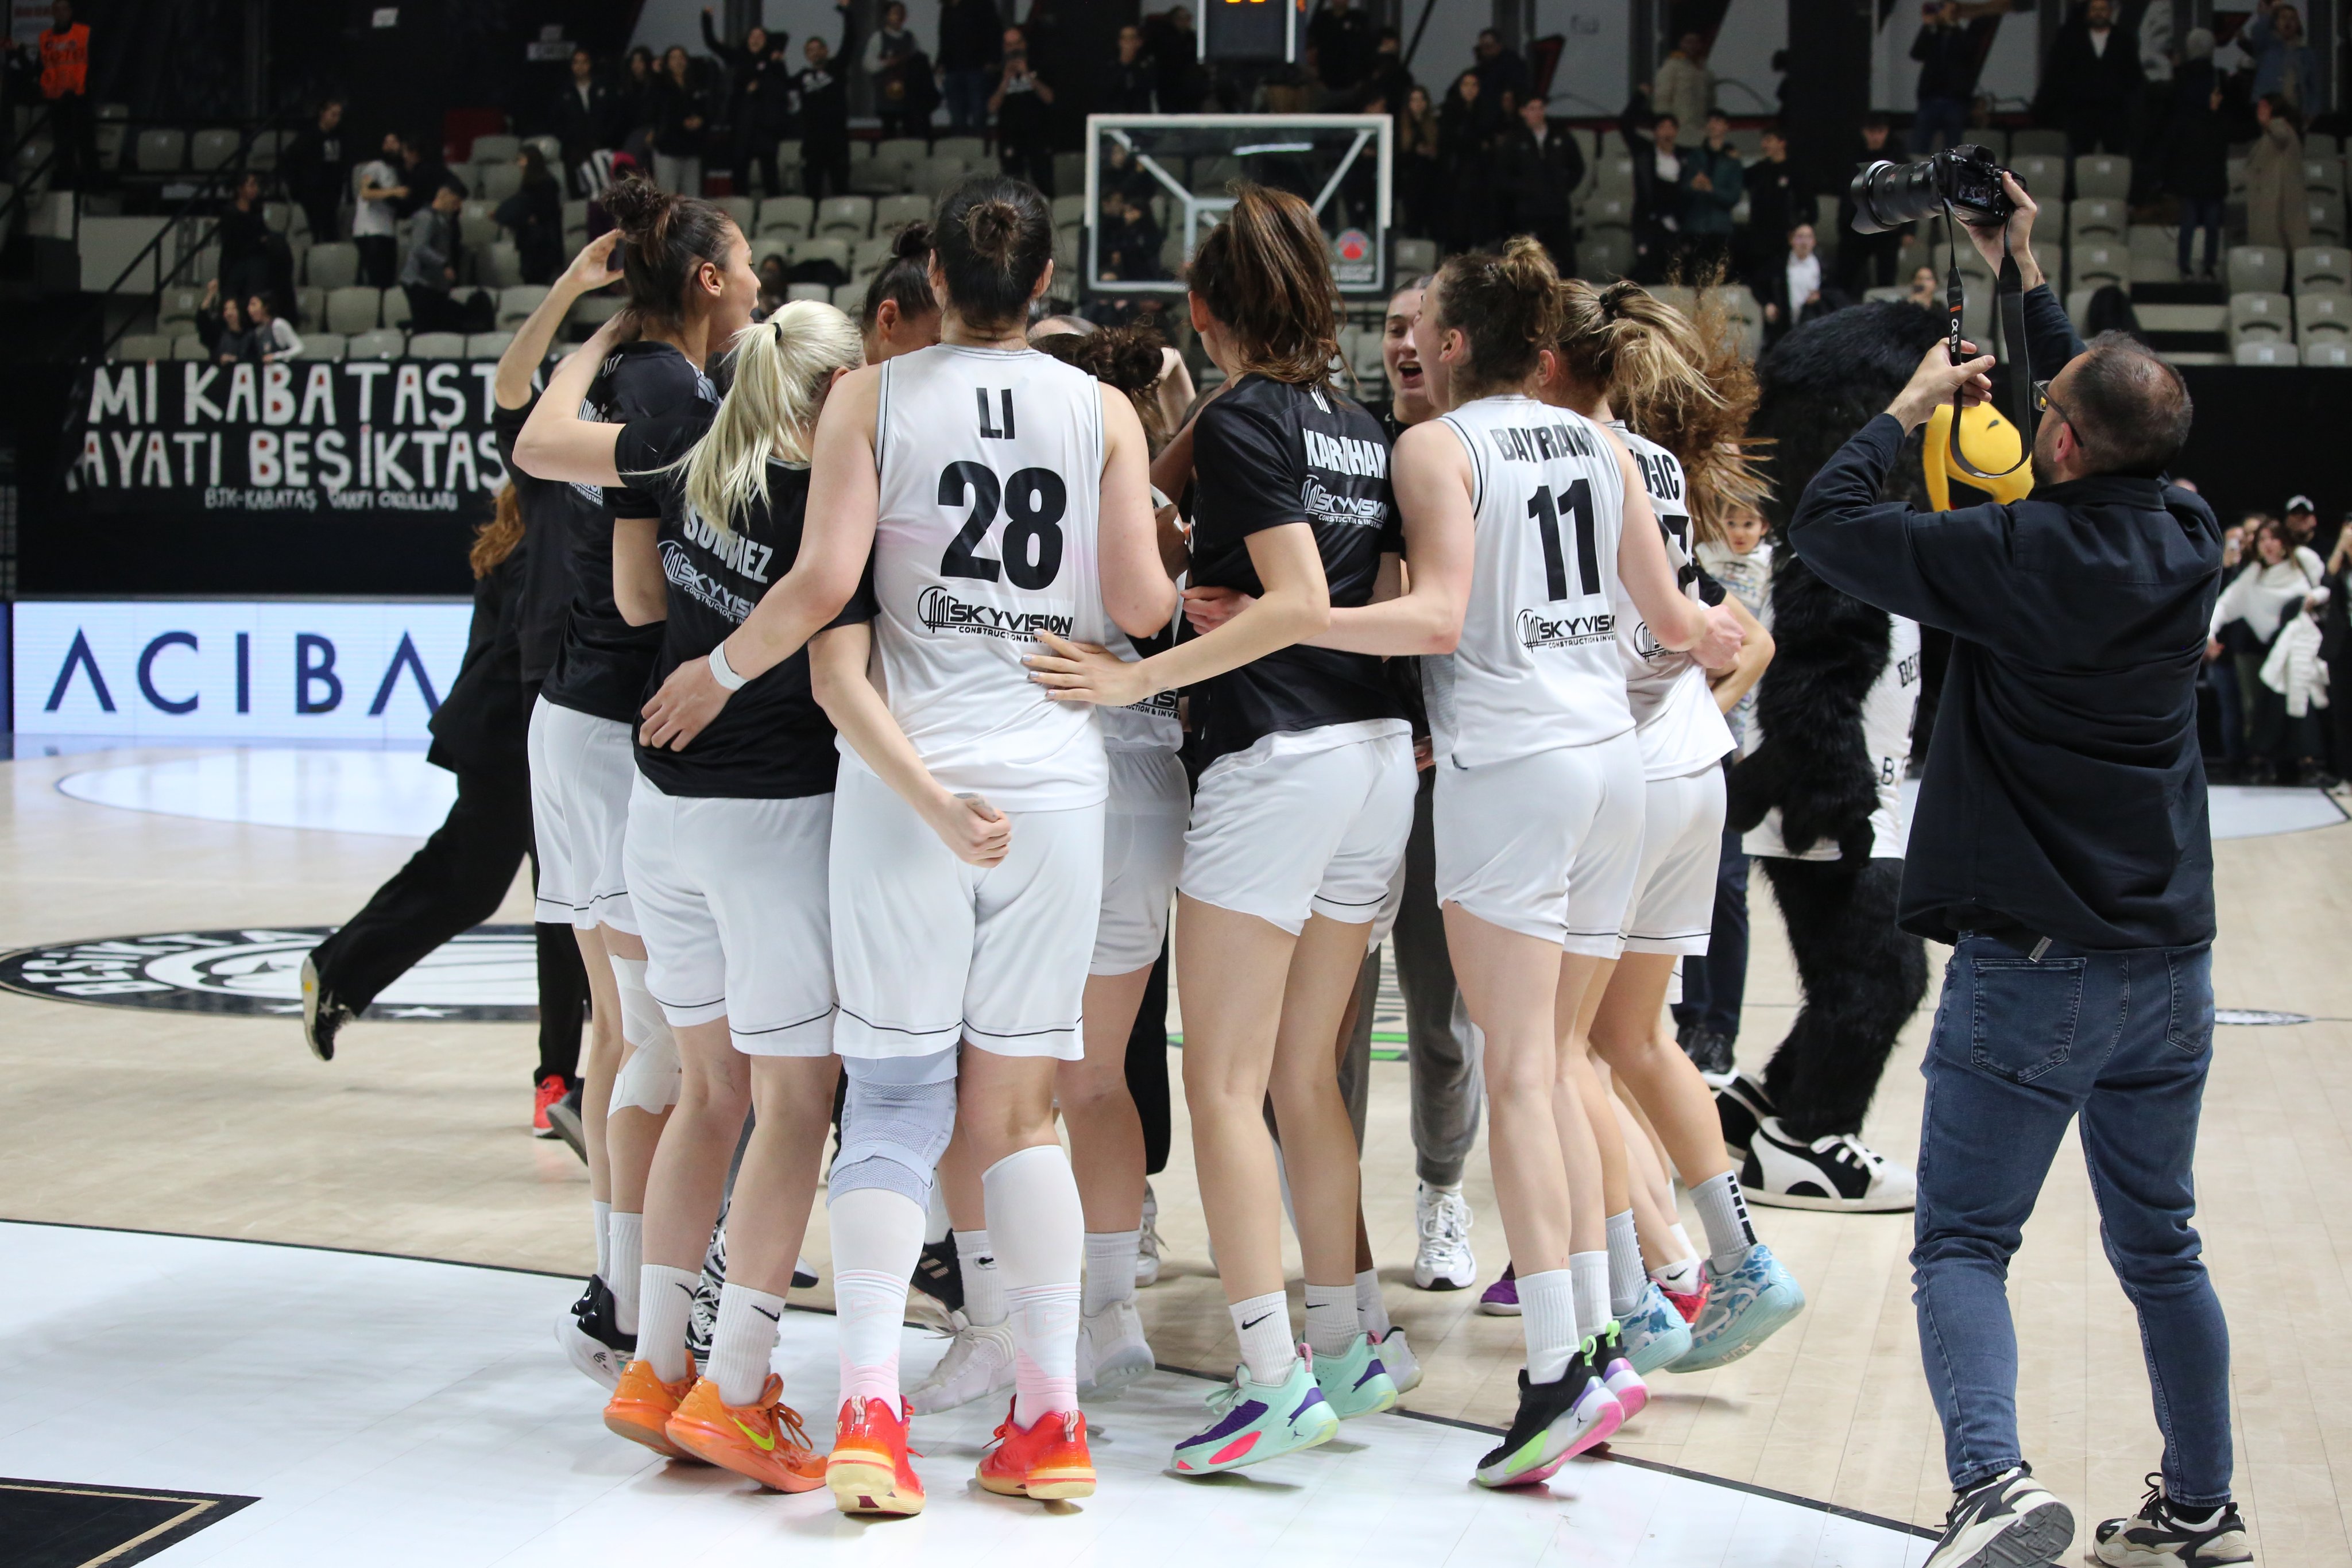 Beşiktaş Basketbol Takımı Avrupa'da ve Türkiye'de başarıya doymuyor